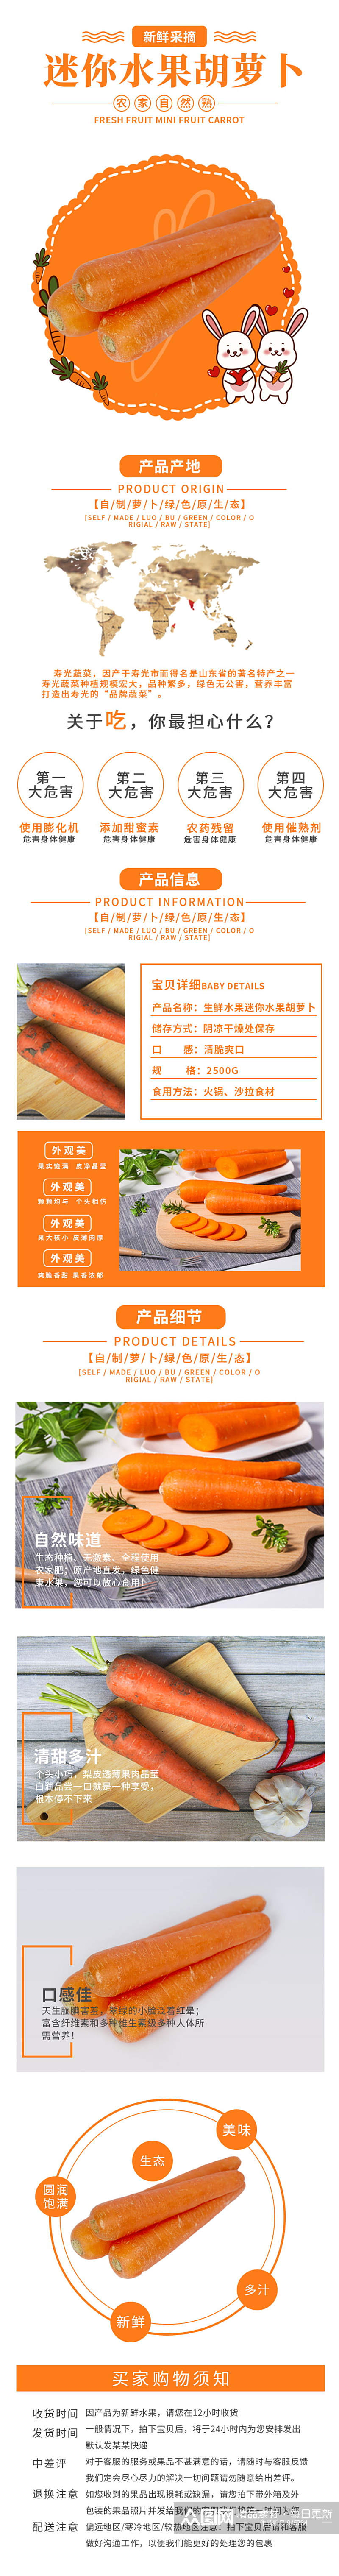 橙色小清新迷你水果胡萝卜详情页素材